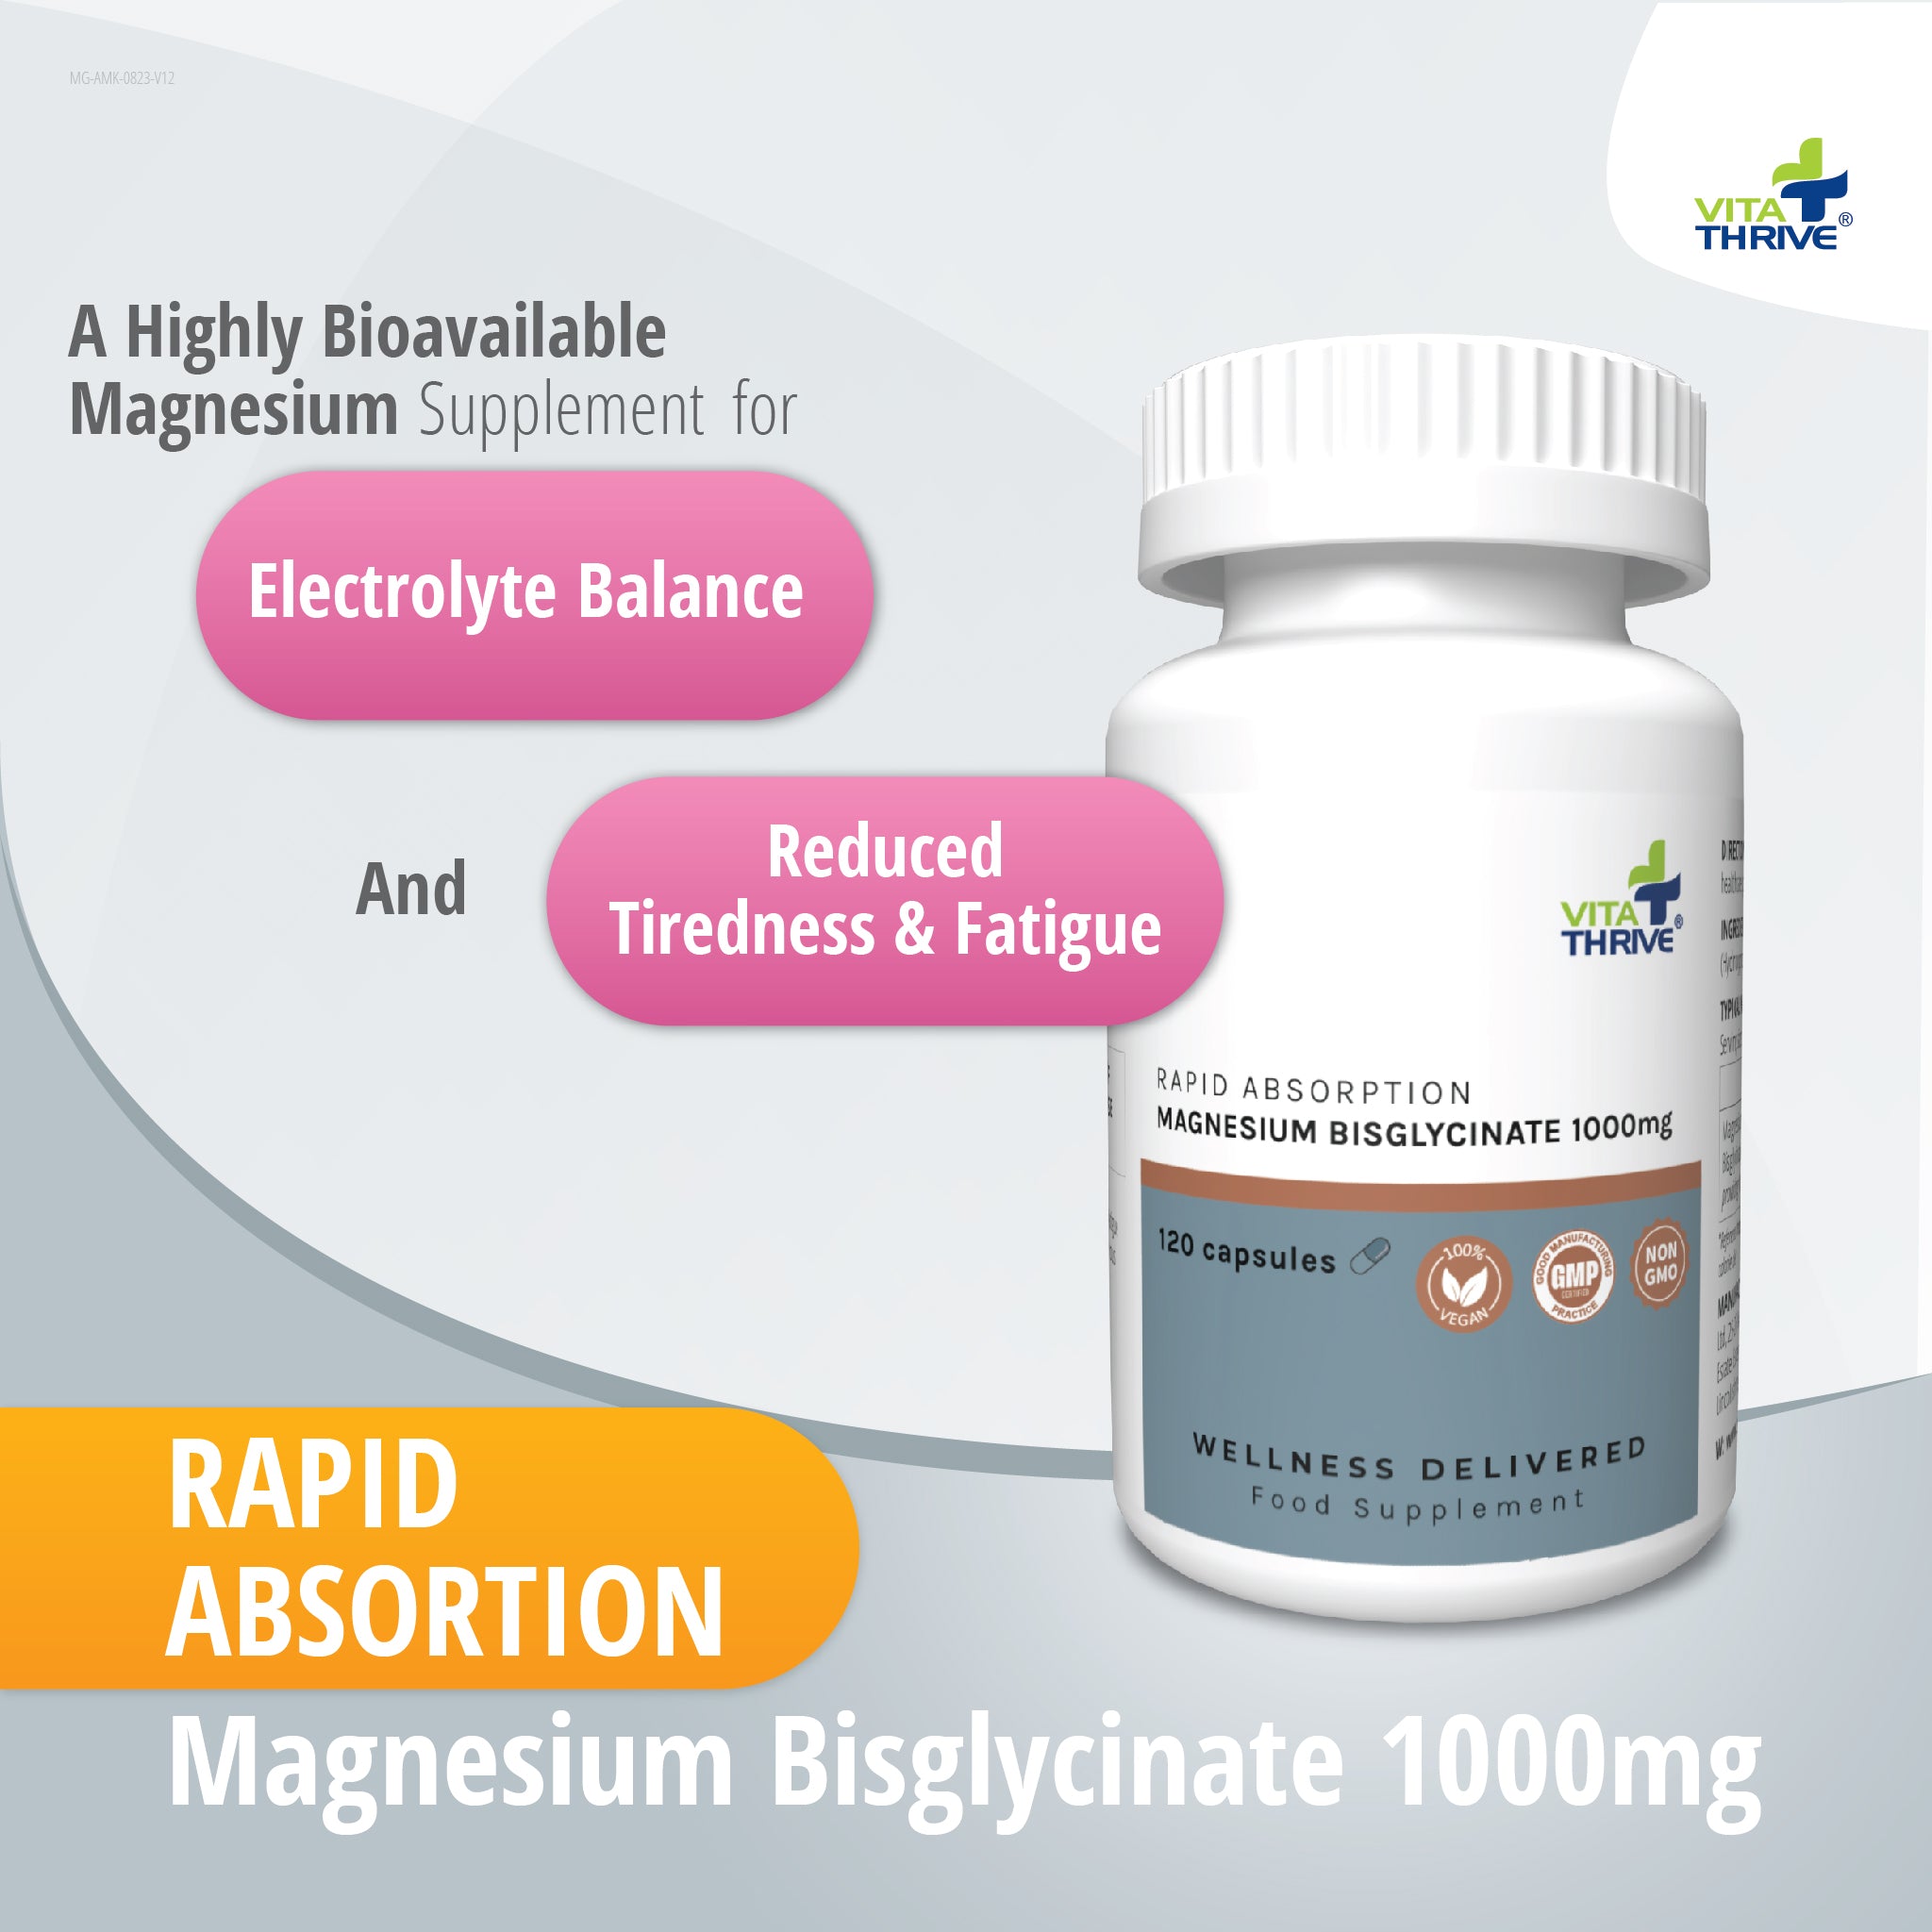 VitaThrive® Rapid Absorption Magnesium Bisglycinate 1,000mg – 120 Capsules